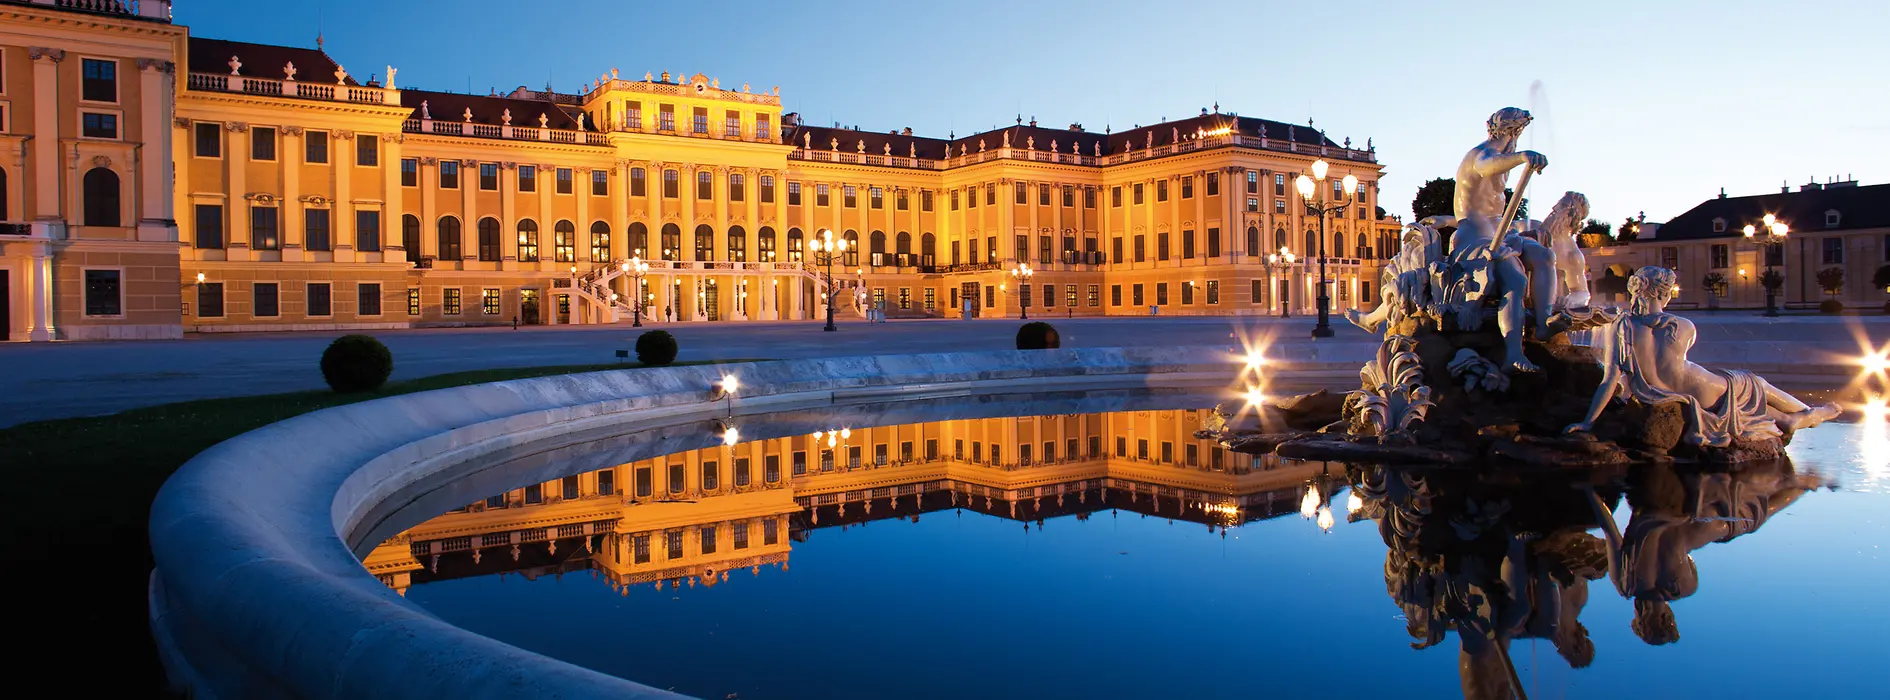 Pałac Schönbrunn nocą